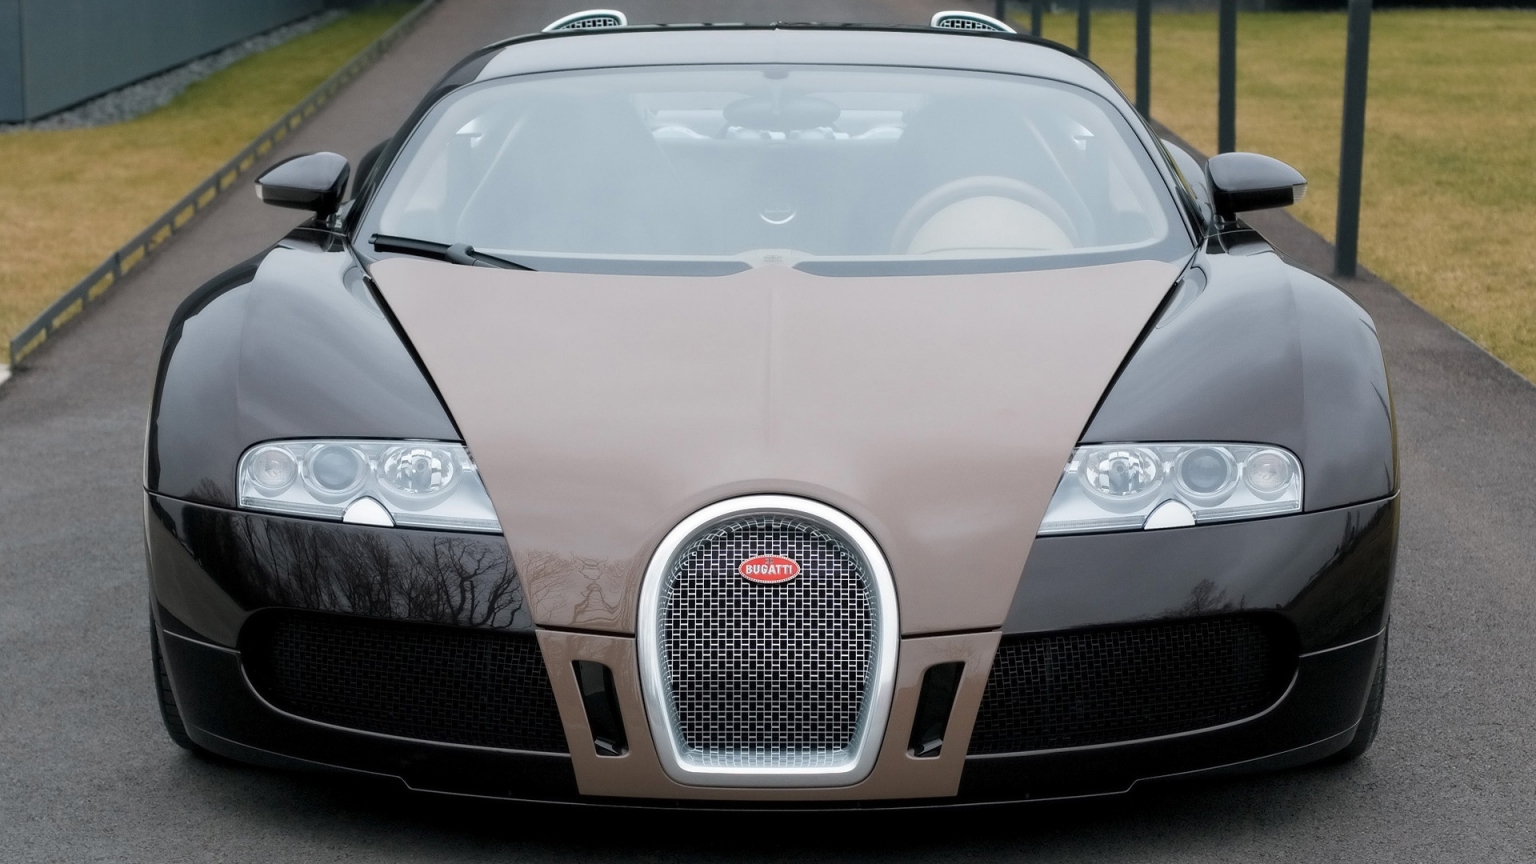 Bugatti Veyron Fbg par Hermes 2008 - Front for 1536 x 864 HDTV resolution